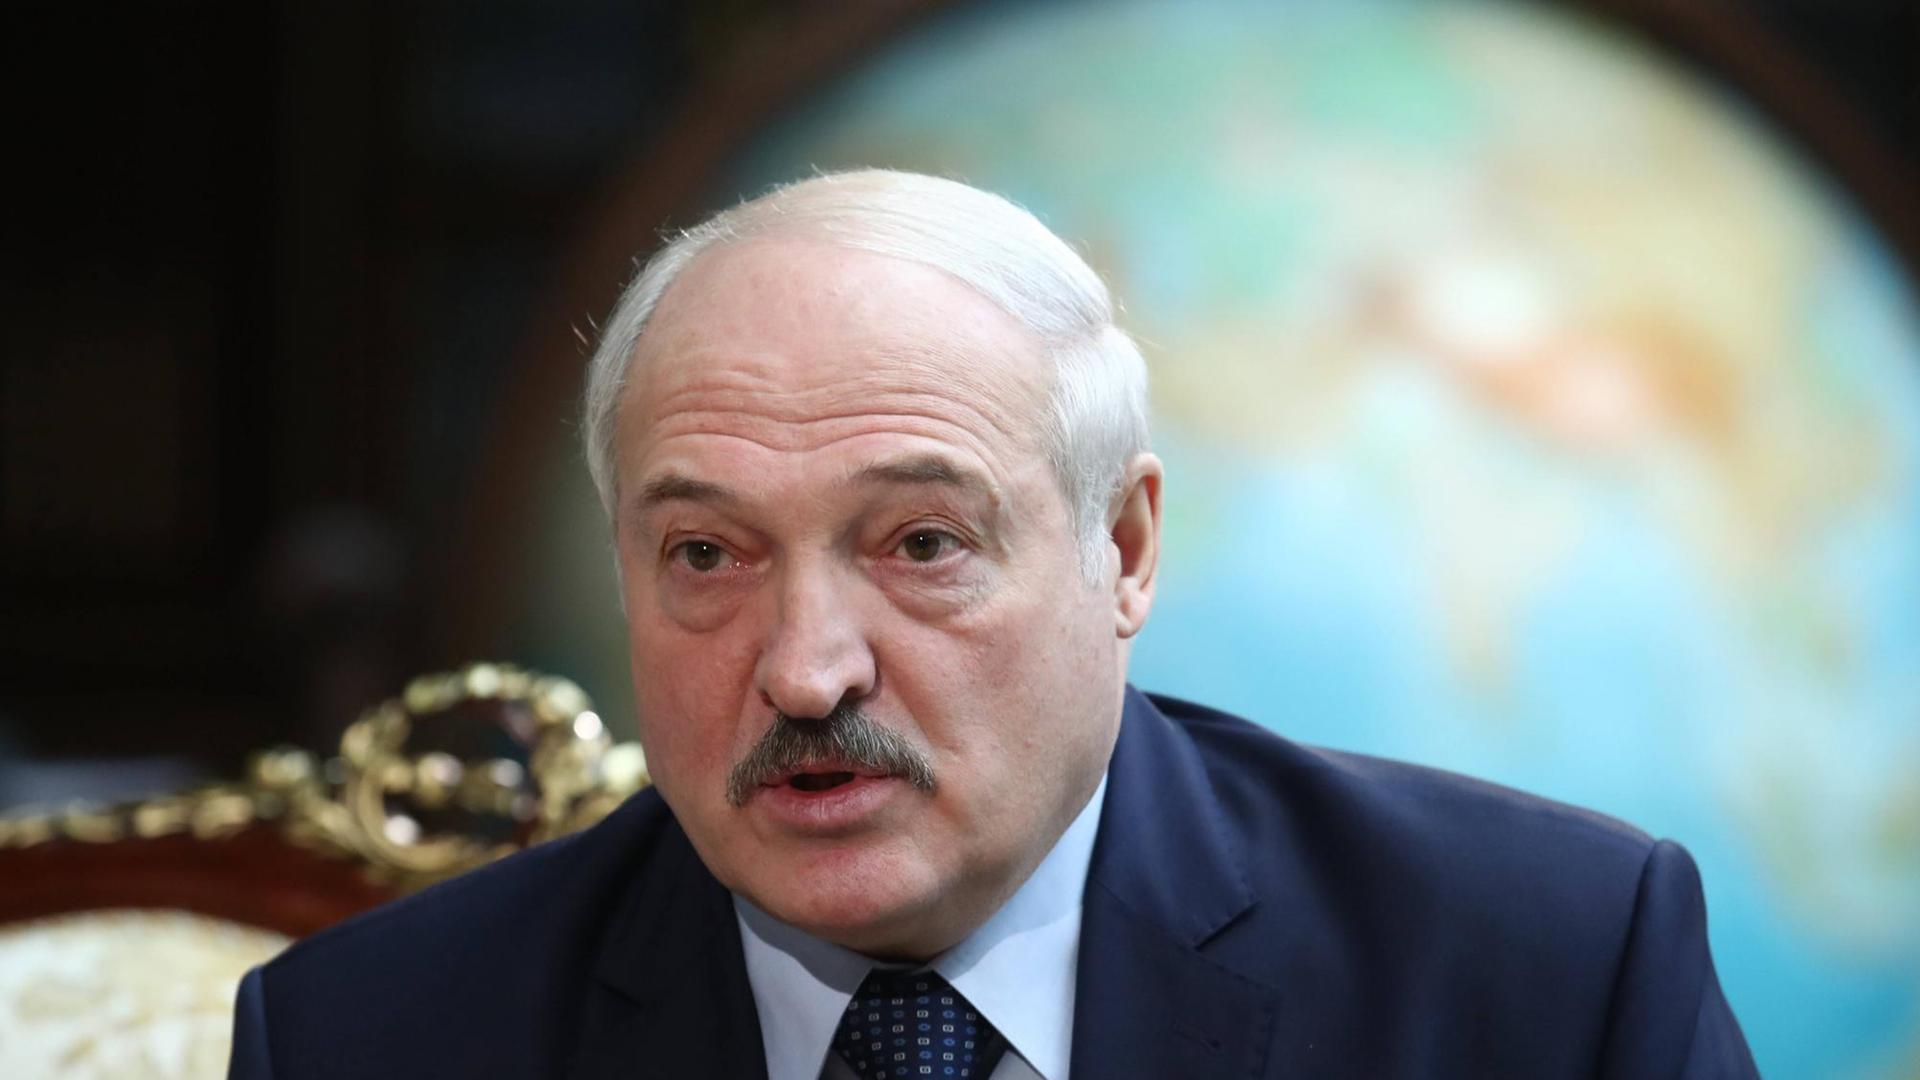 Der belarussische Machthaber Alexander Lukaschenko wurde vom Internationalen Olympischen Komitee wegen "politischer Diskriminierung" suspendiert.